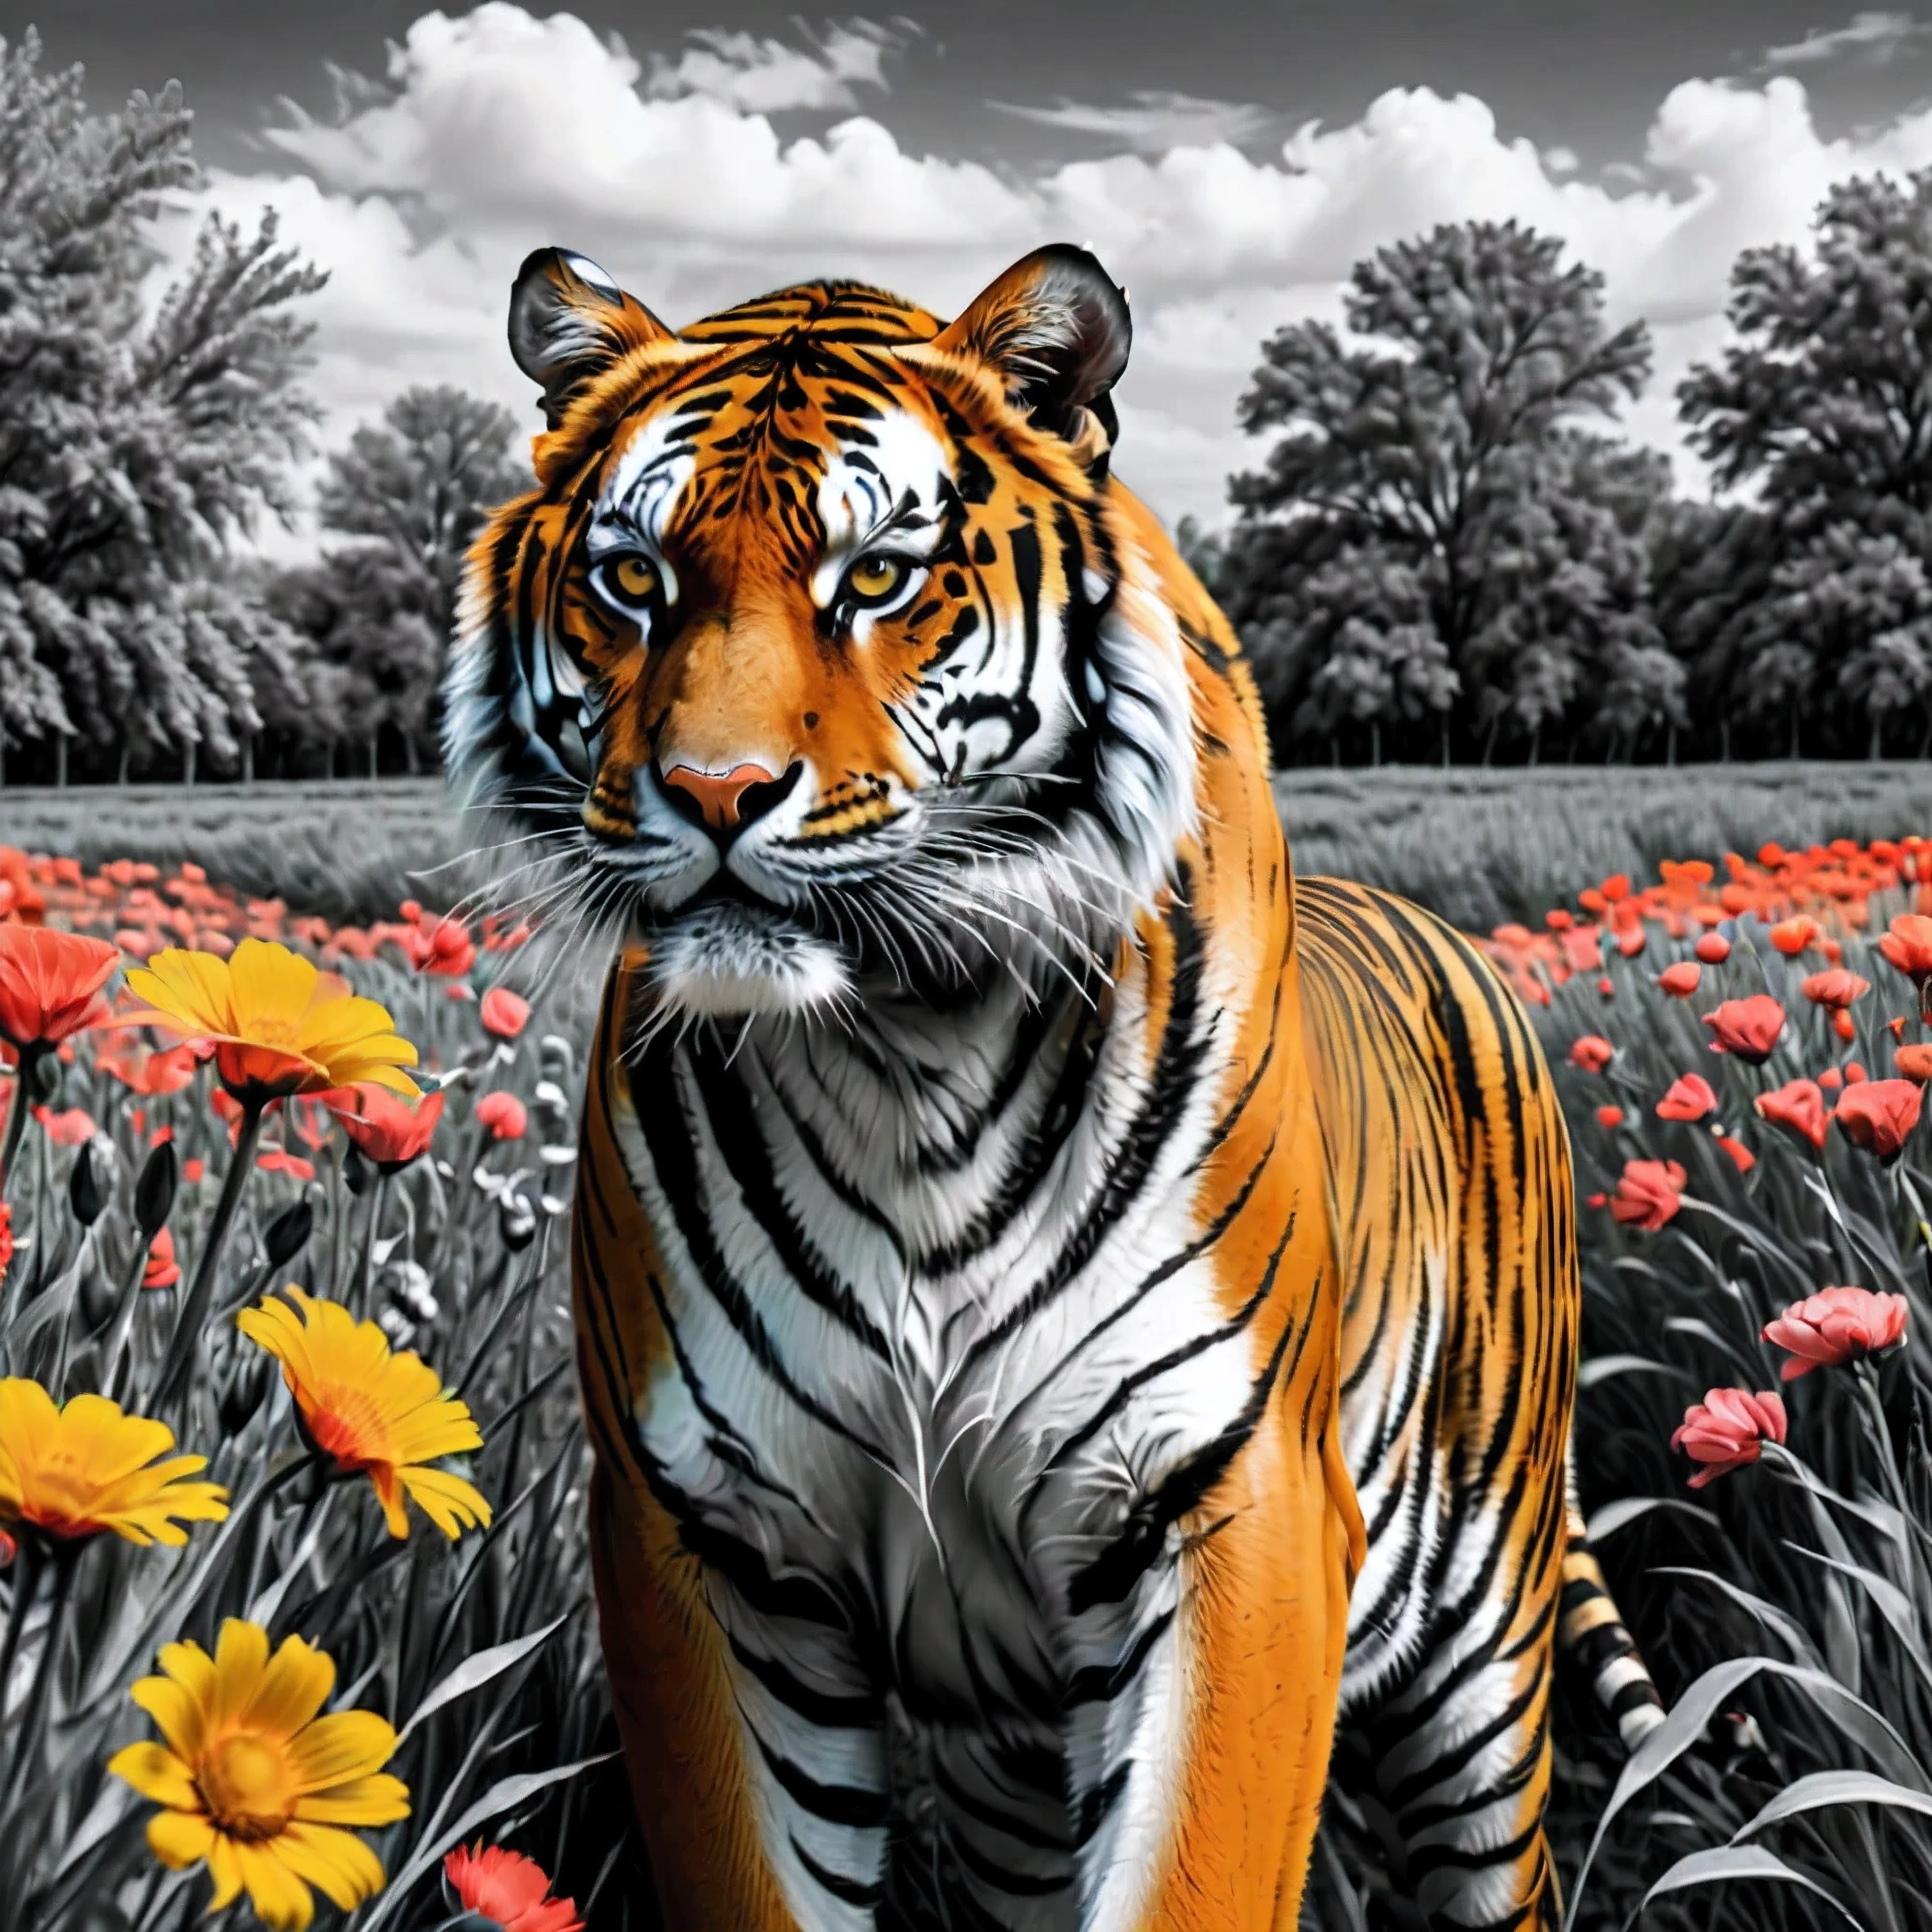 ((Селективный окрас)), Рисунок величественного тигра на цветочном поле, плавные линии, произведение изобразительного искусства, Выражайте выражения и позы с помощью контраста чернил., подчеркнуть свет, тень и пространство. фигуративное искусство, (Лучшее качество, 4K, 8К, Высокое разрешение,шедевр:1.2) ,(действительный, photoдействительный, photo-действительный:1.37). 